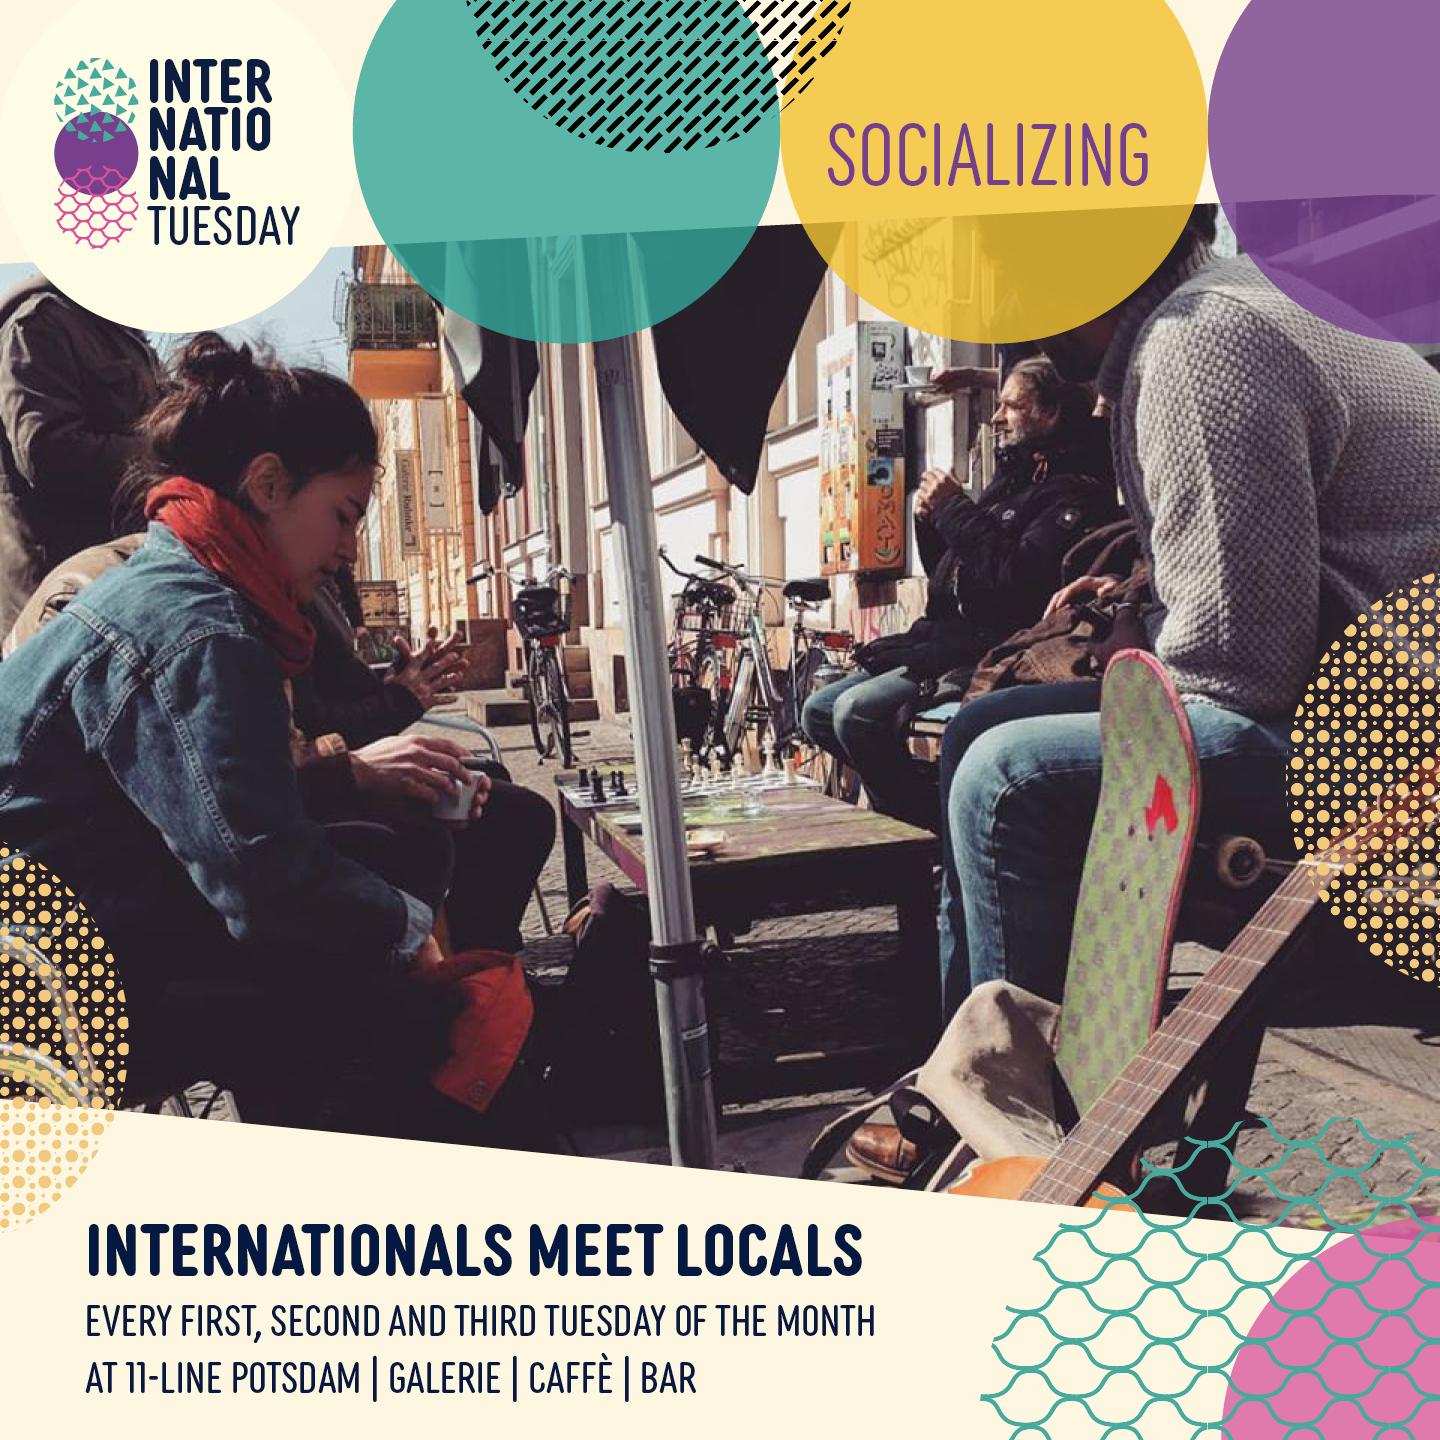 Titelbild der Veranstaltung "International meet locals".